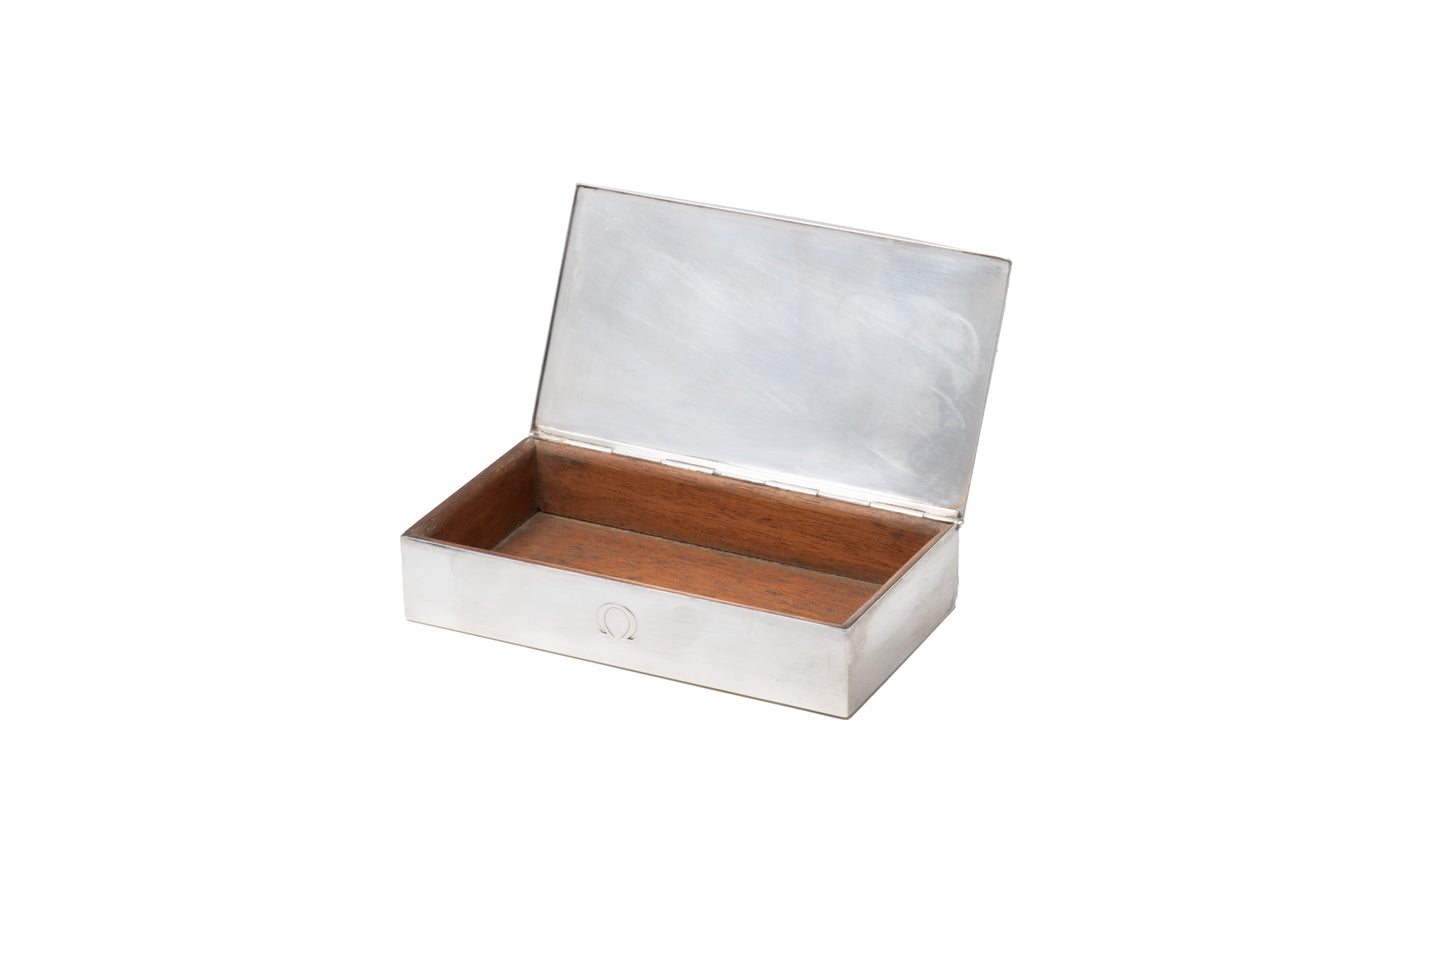 Omega Sterling Silver Presentation Box - Rectangular Polished Lid